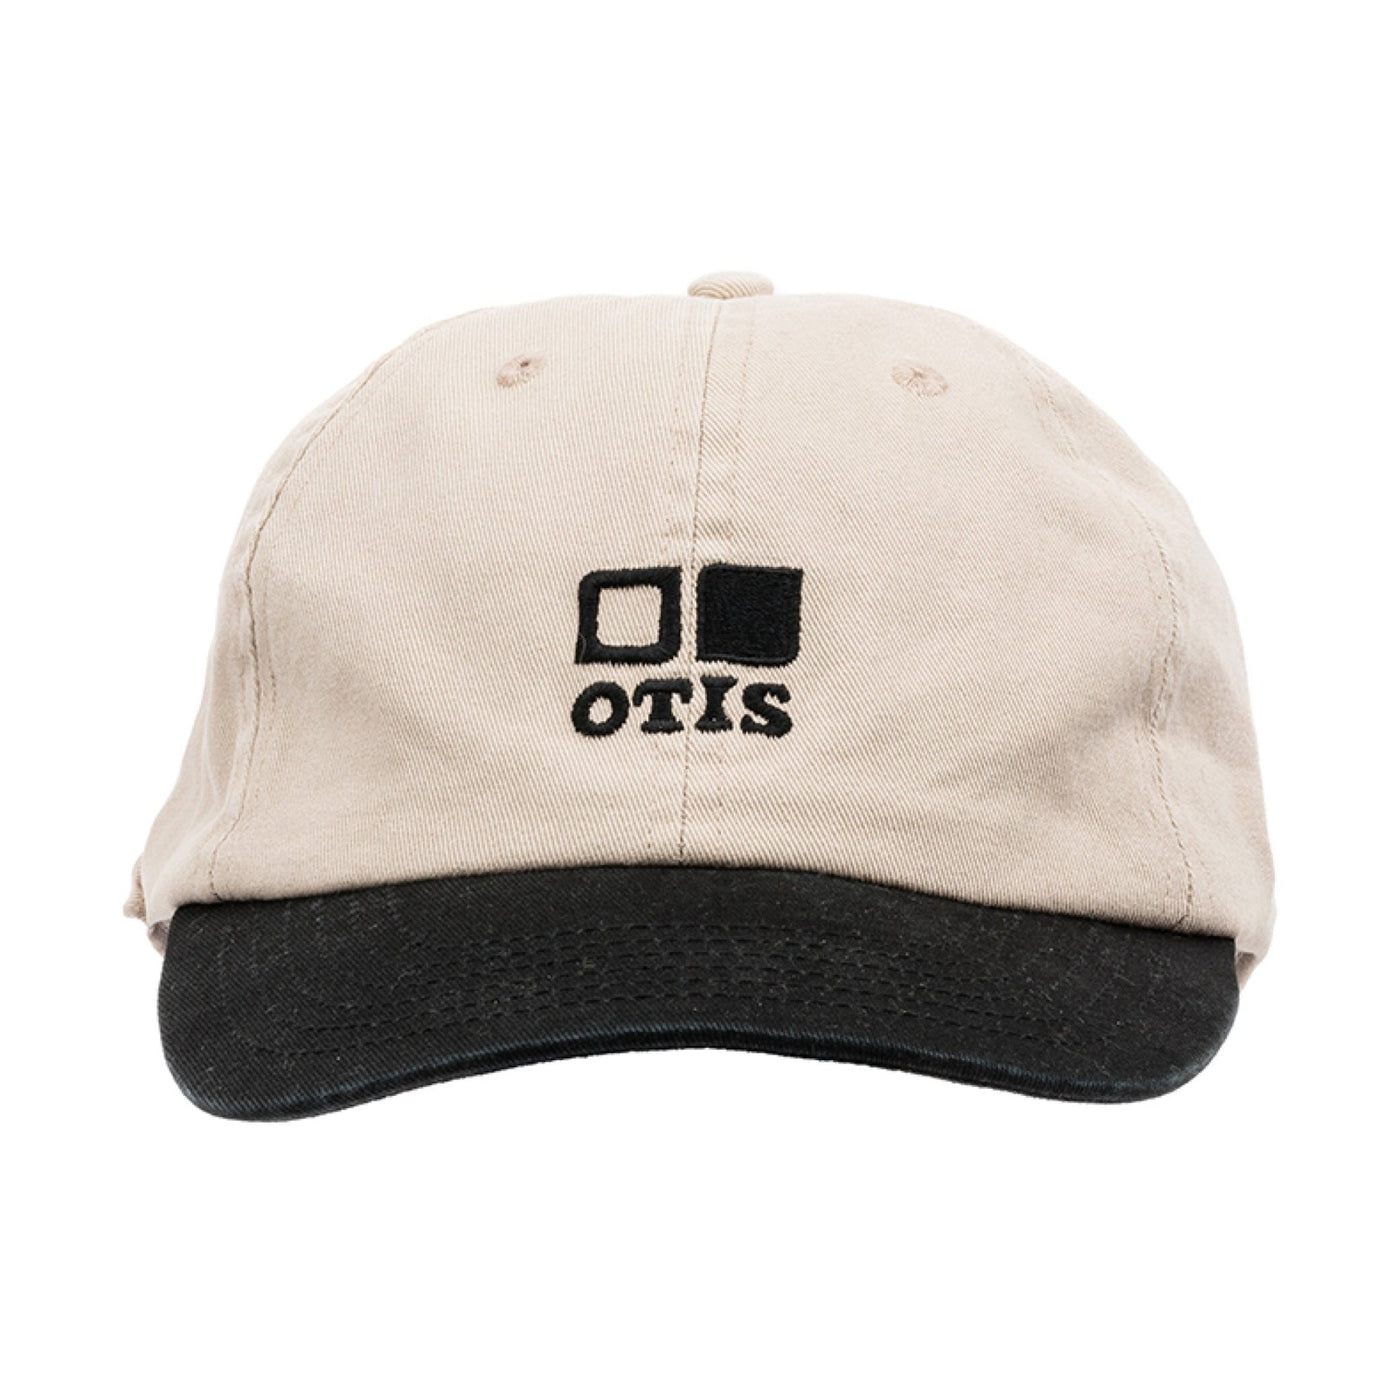 Black and beige cap facing forward with OTIS Eyewear logo